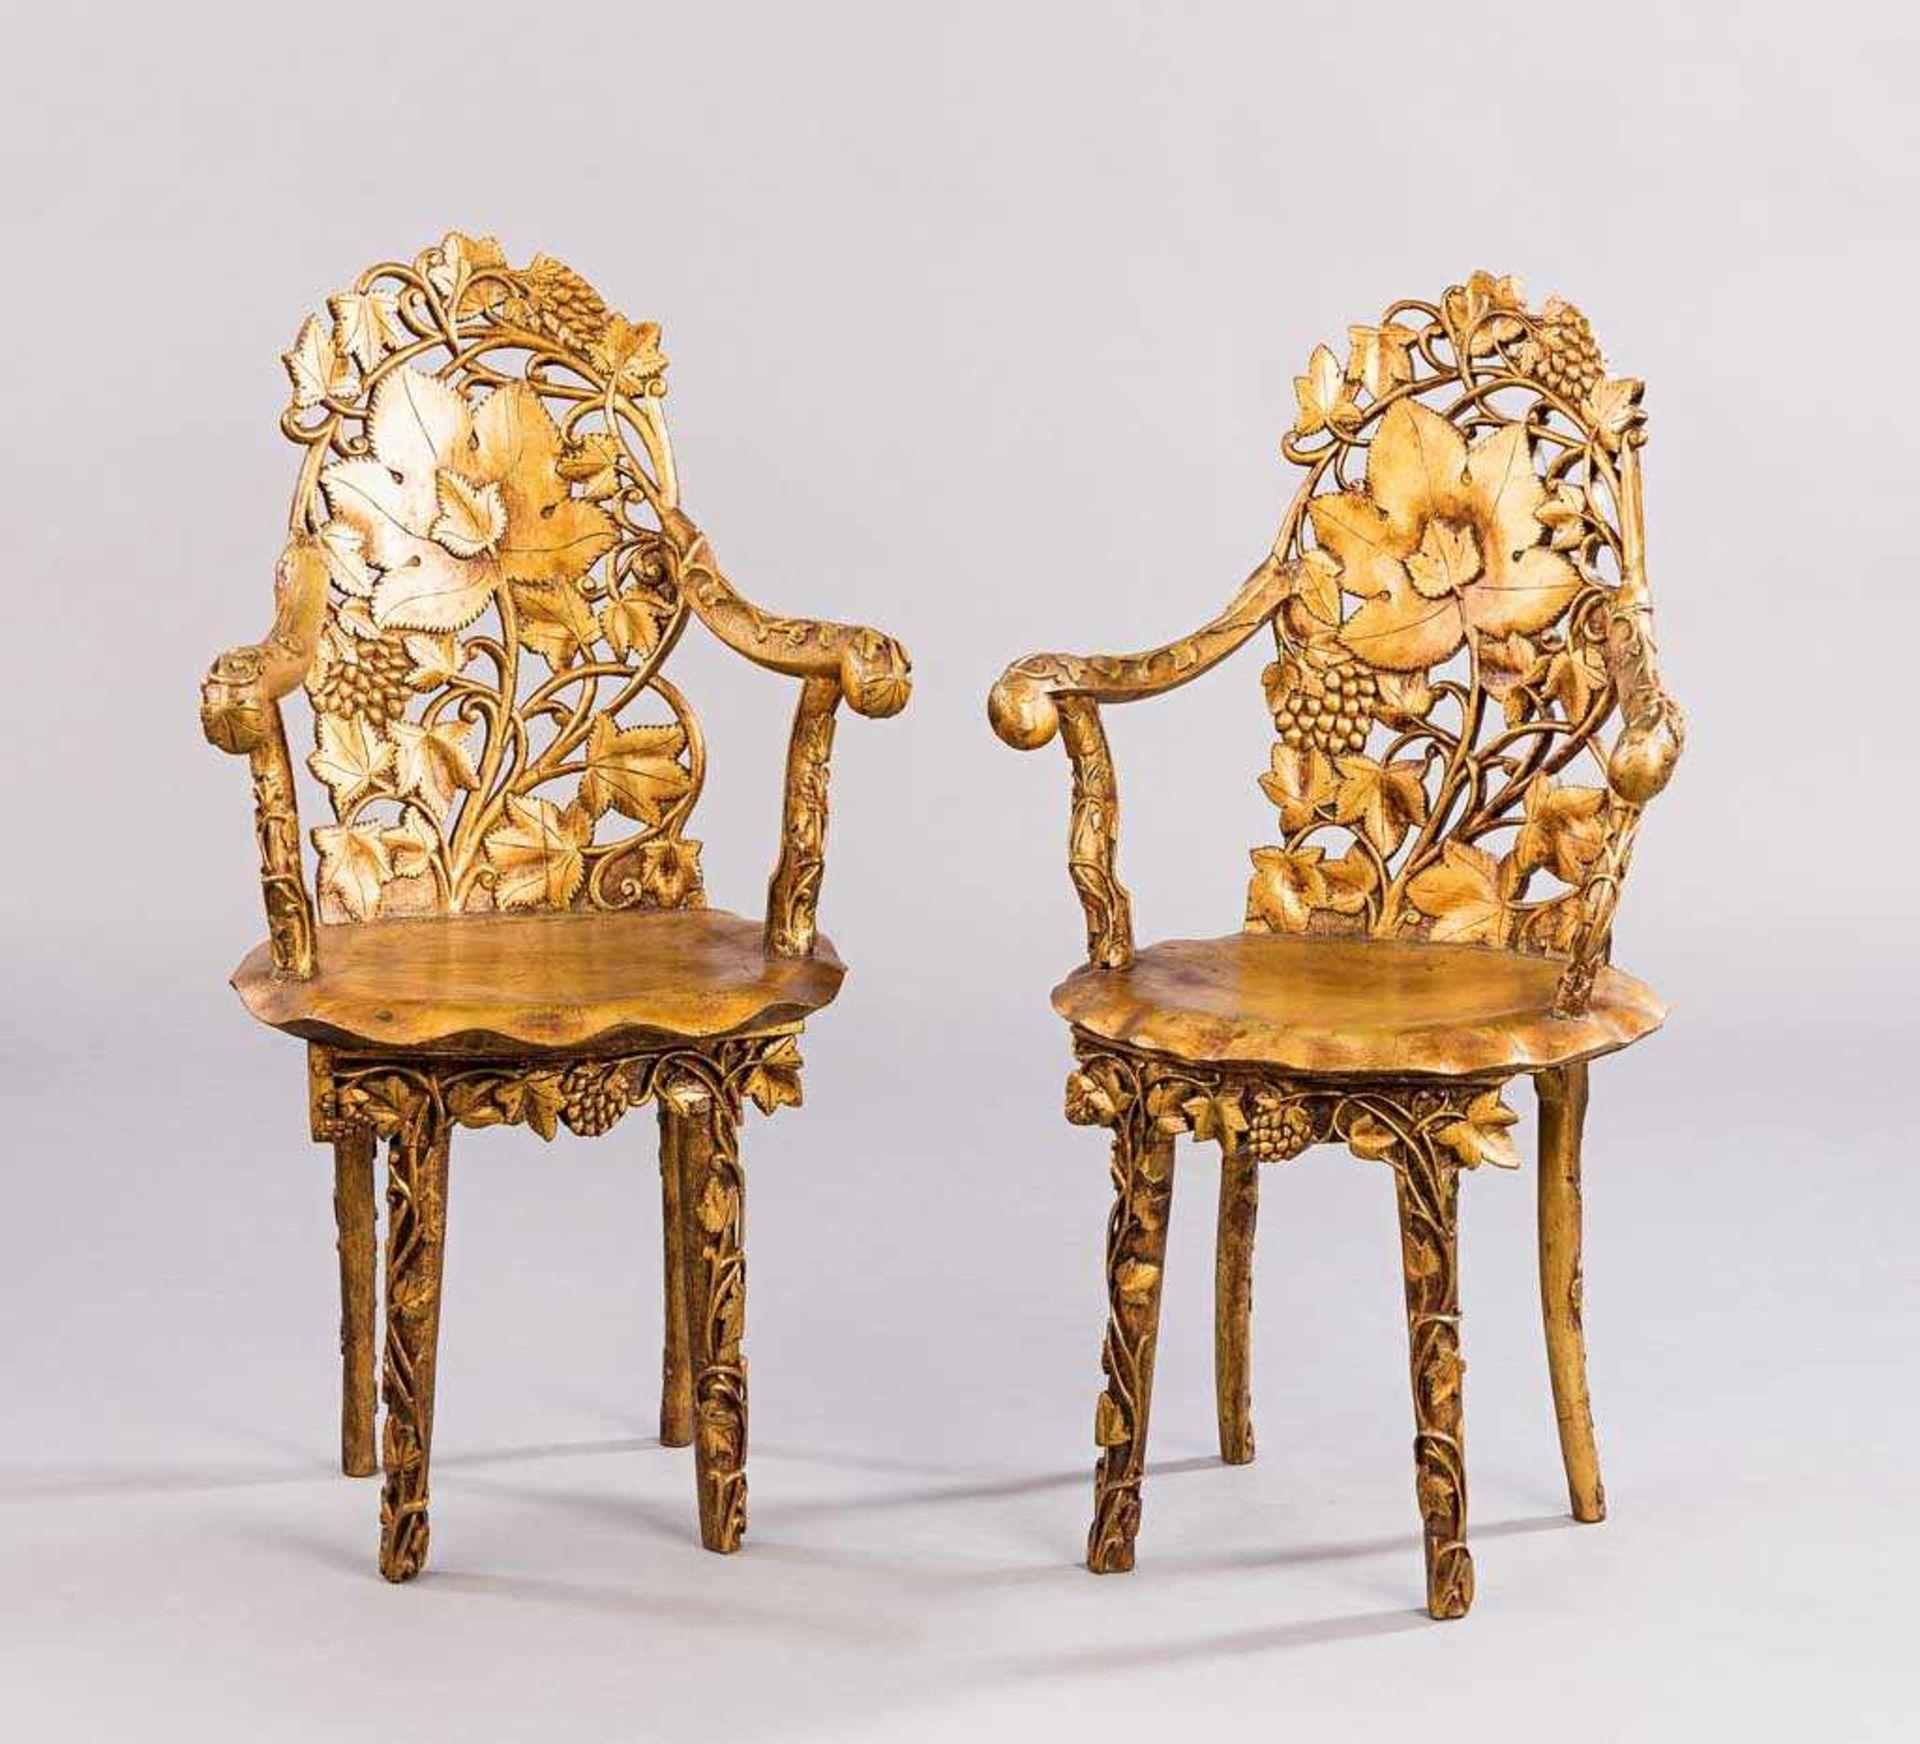 Paar originelle Stühle. Schnitzerei mit Blattwerk. Ölvergoldet. China? H 101 (47) cm